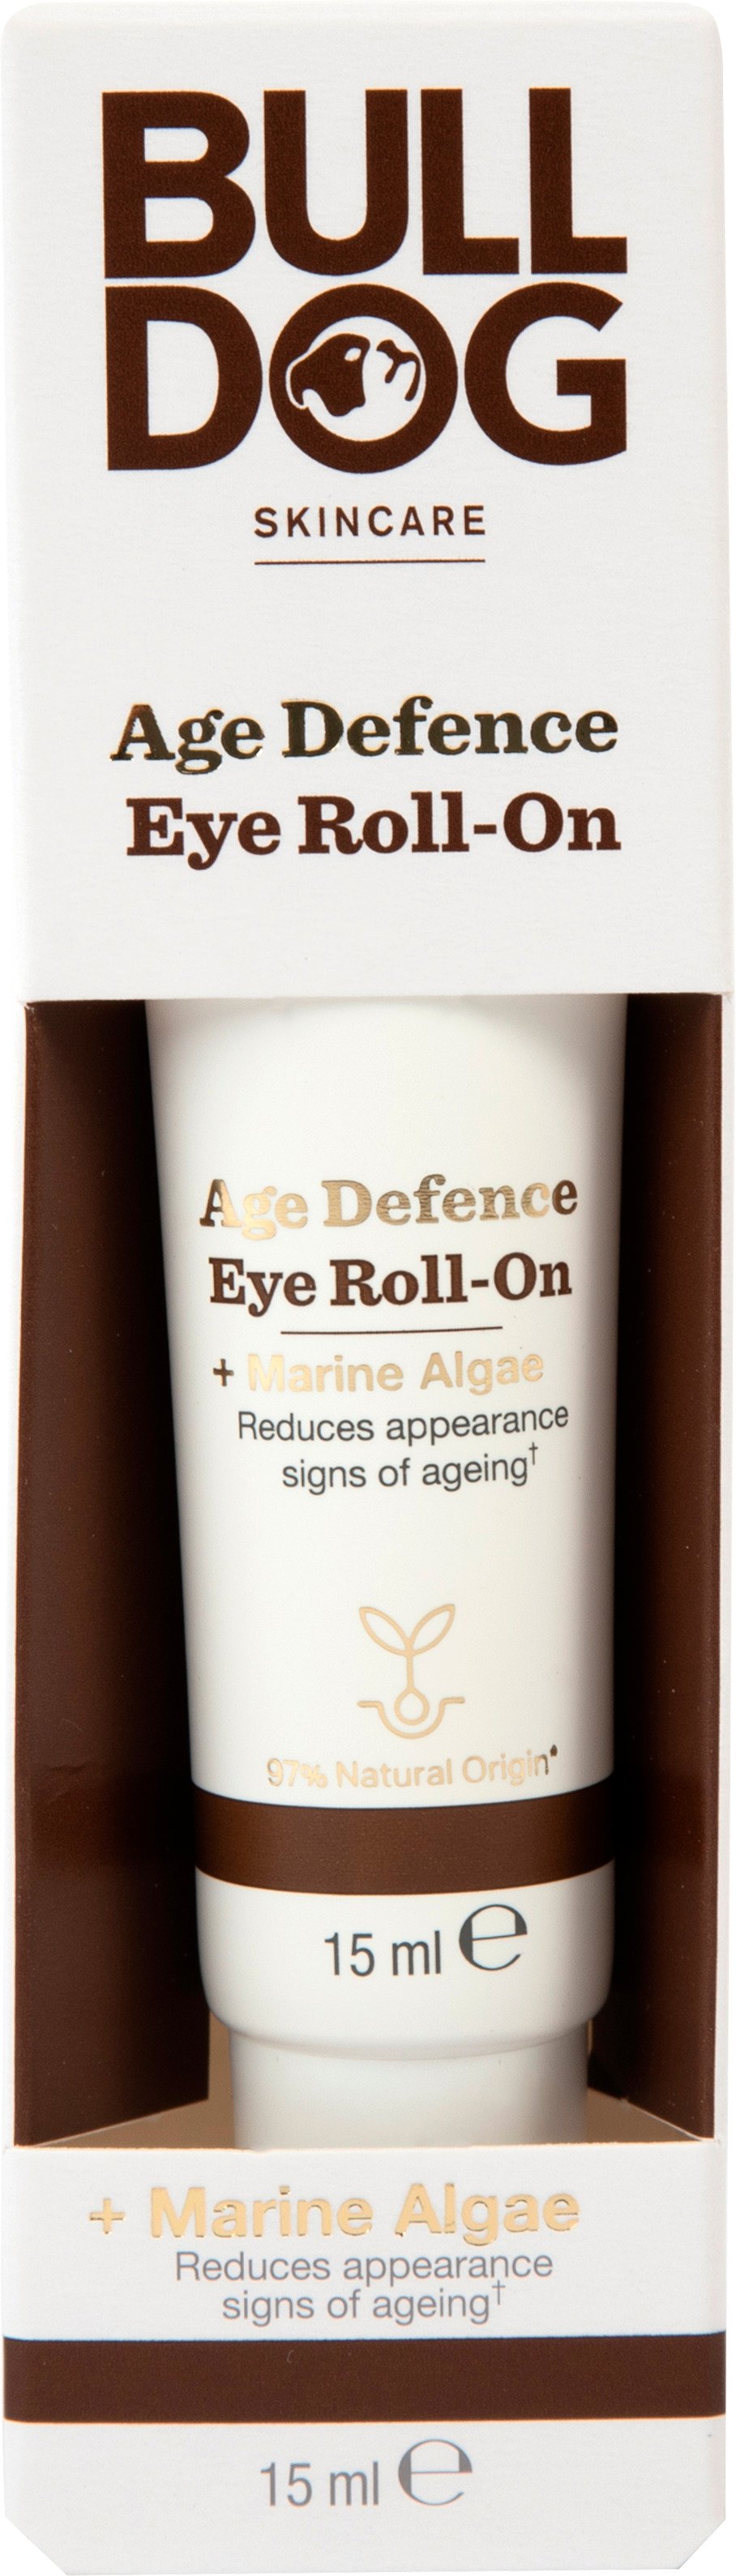 Bulldog Age Defence Eye Roll-on 15 ml